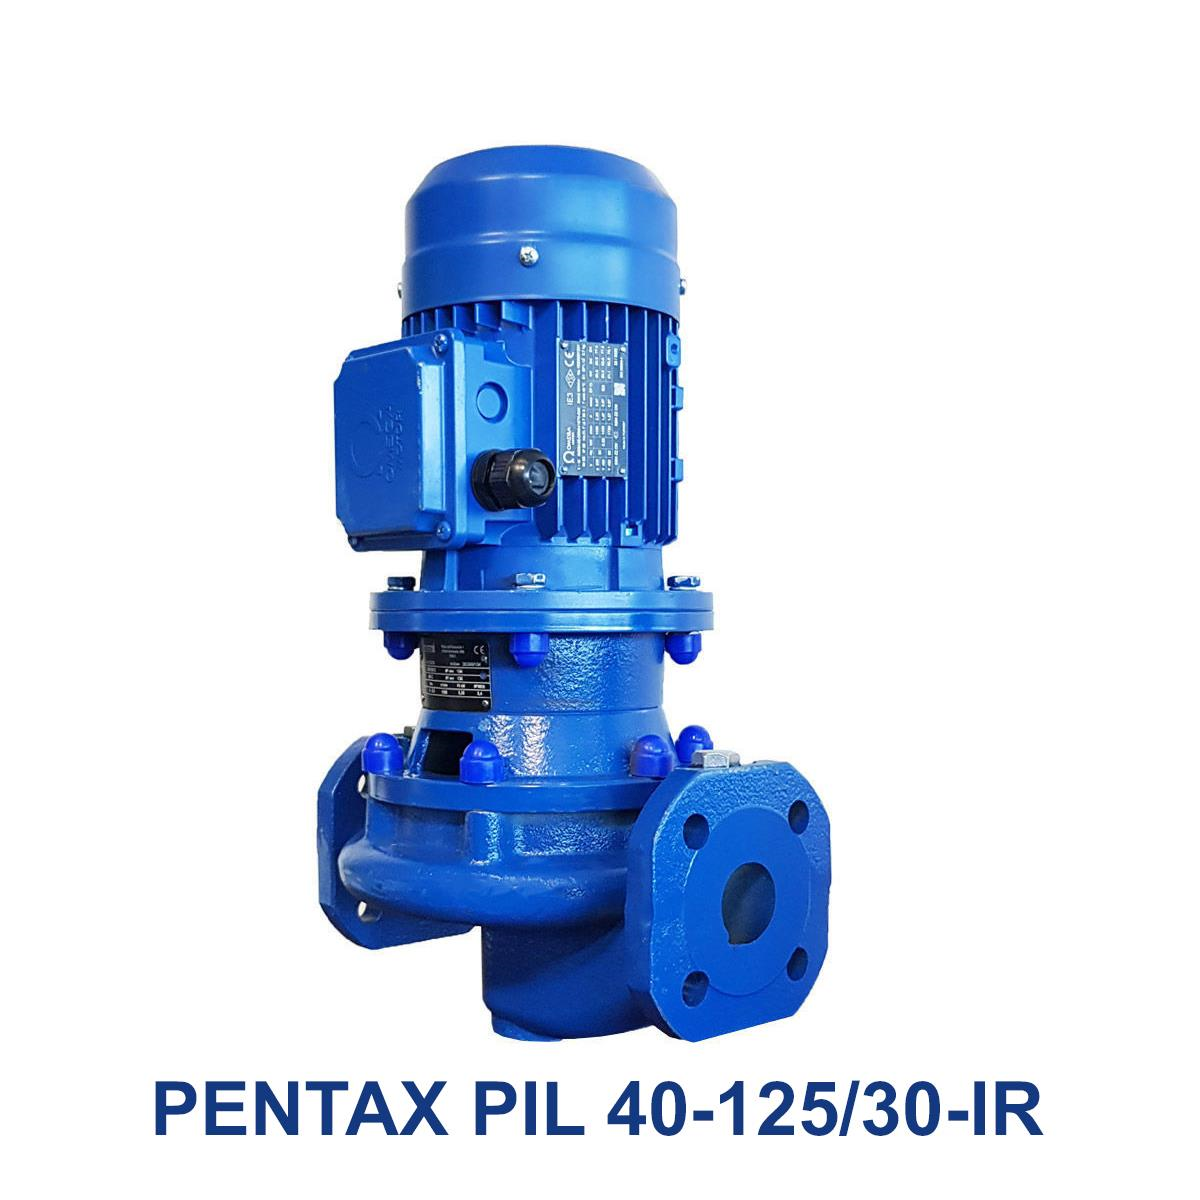 PENTAX-PIL-40-125-30-IR